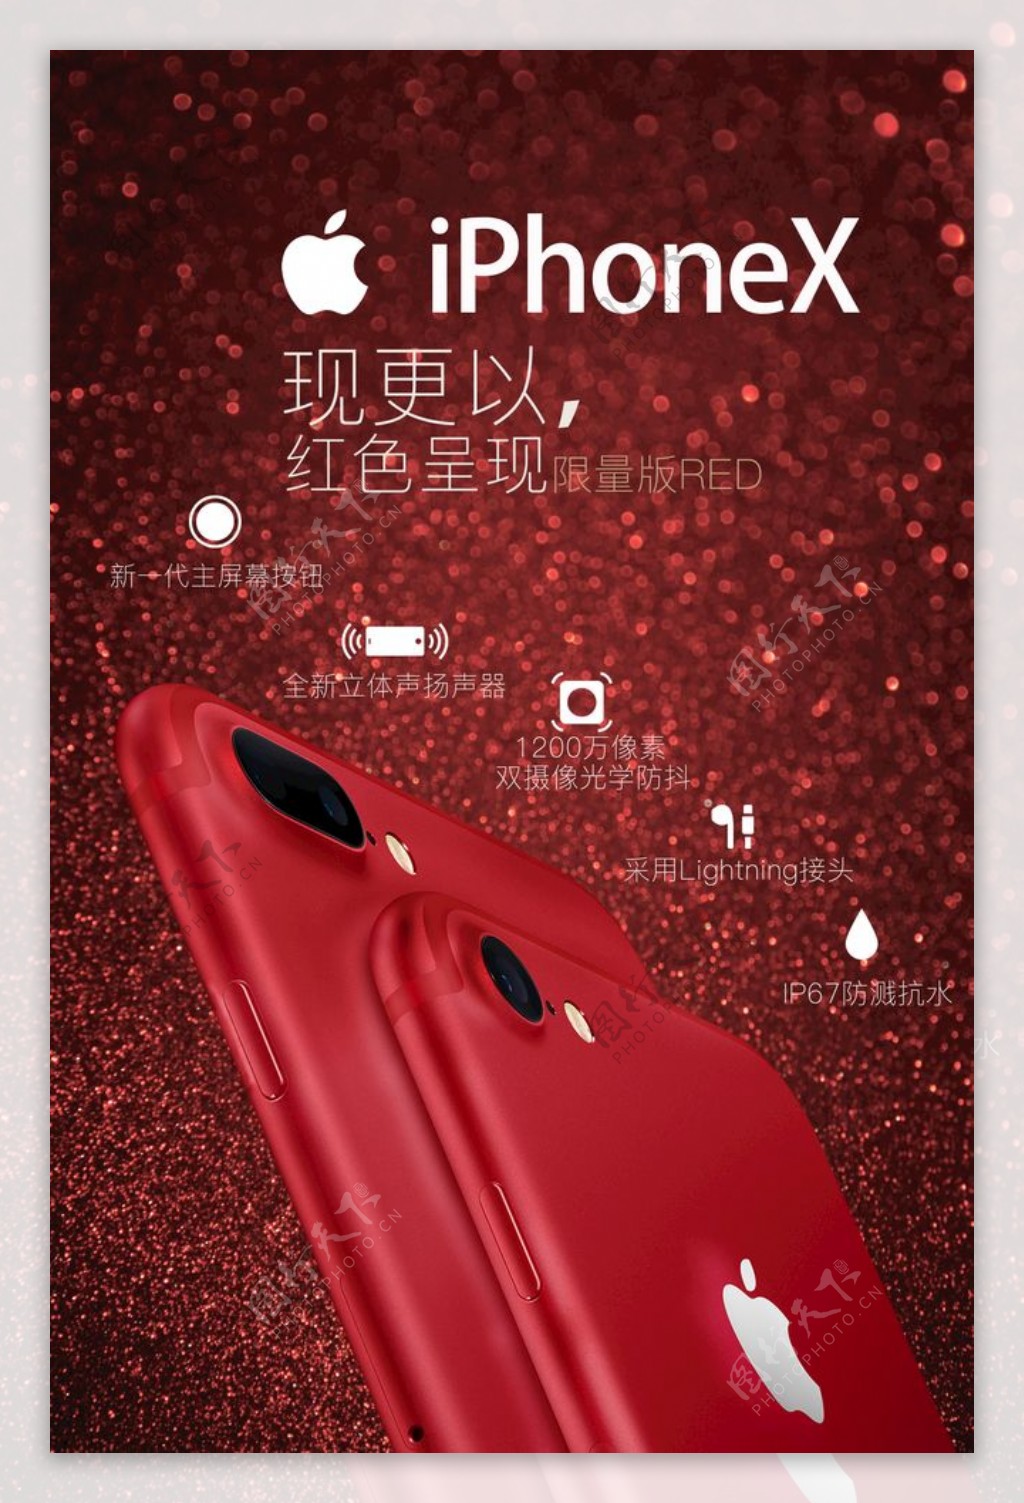 iphonex新品发布